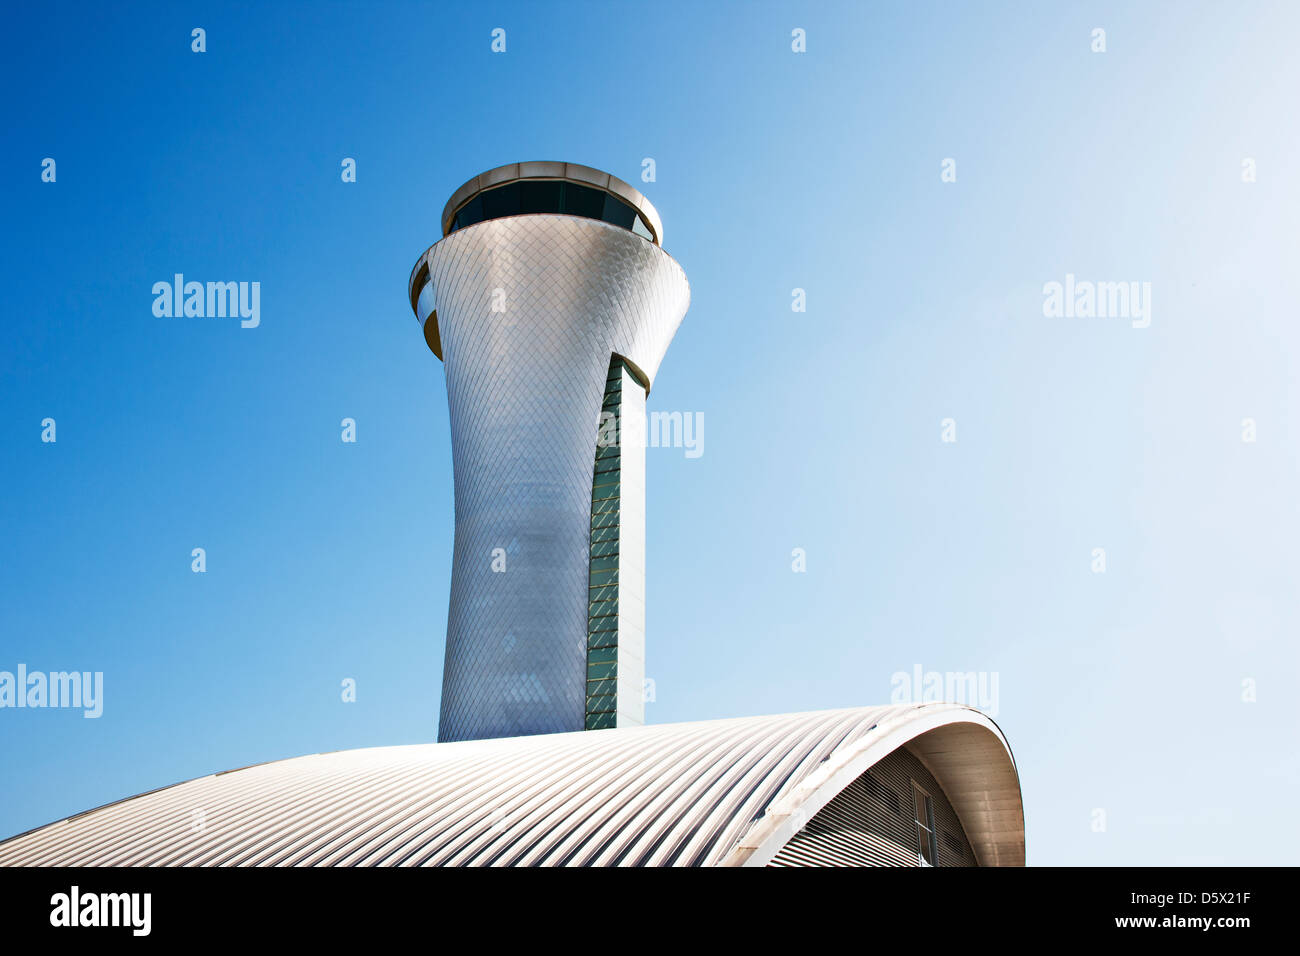 Tour de contrôle de la circulation aérienne et ciel bleu Banque D'Images